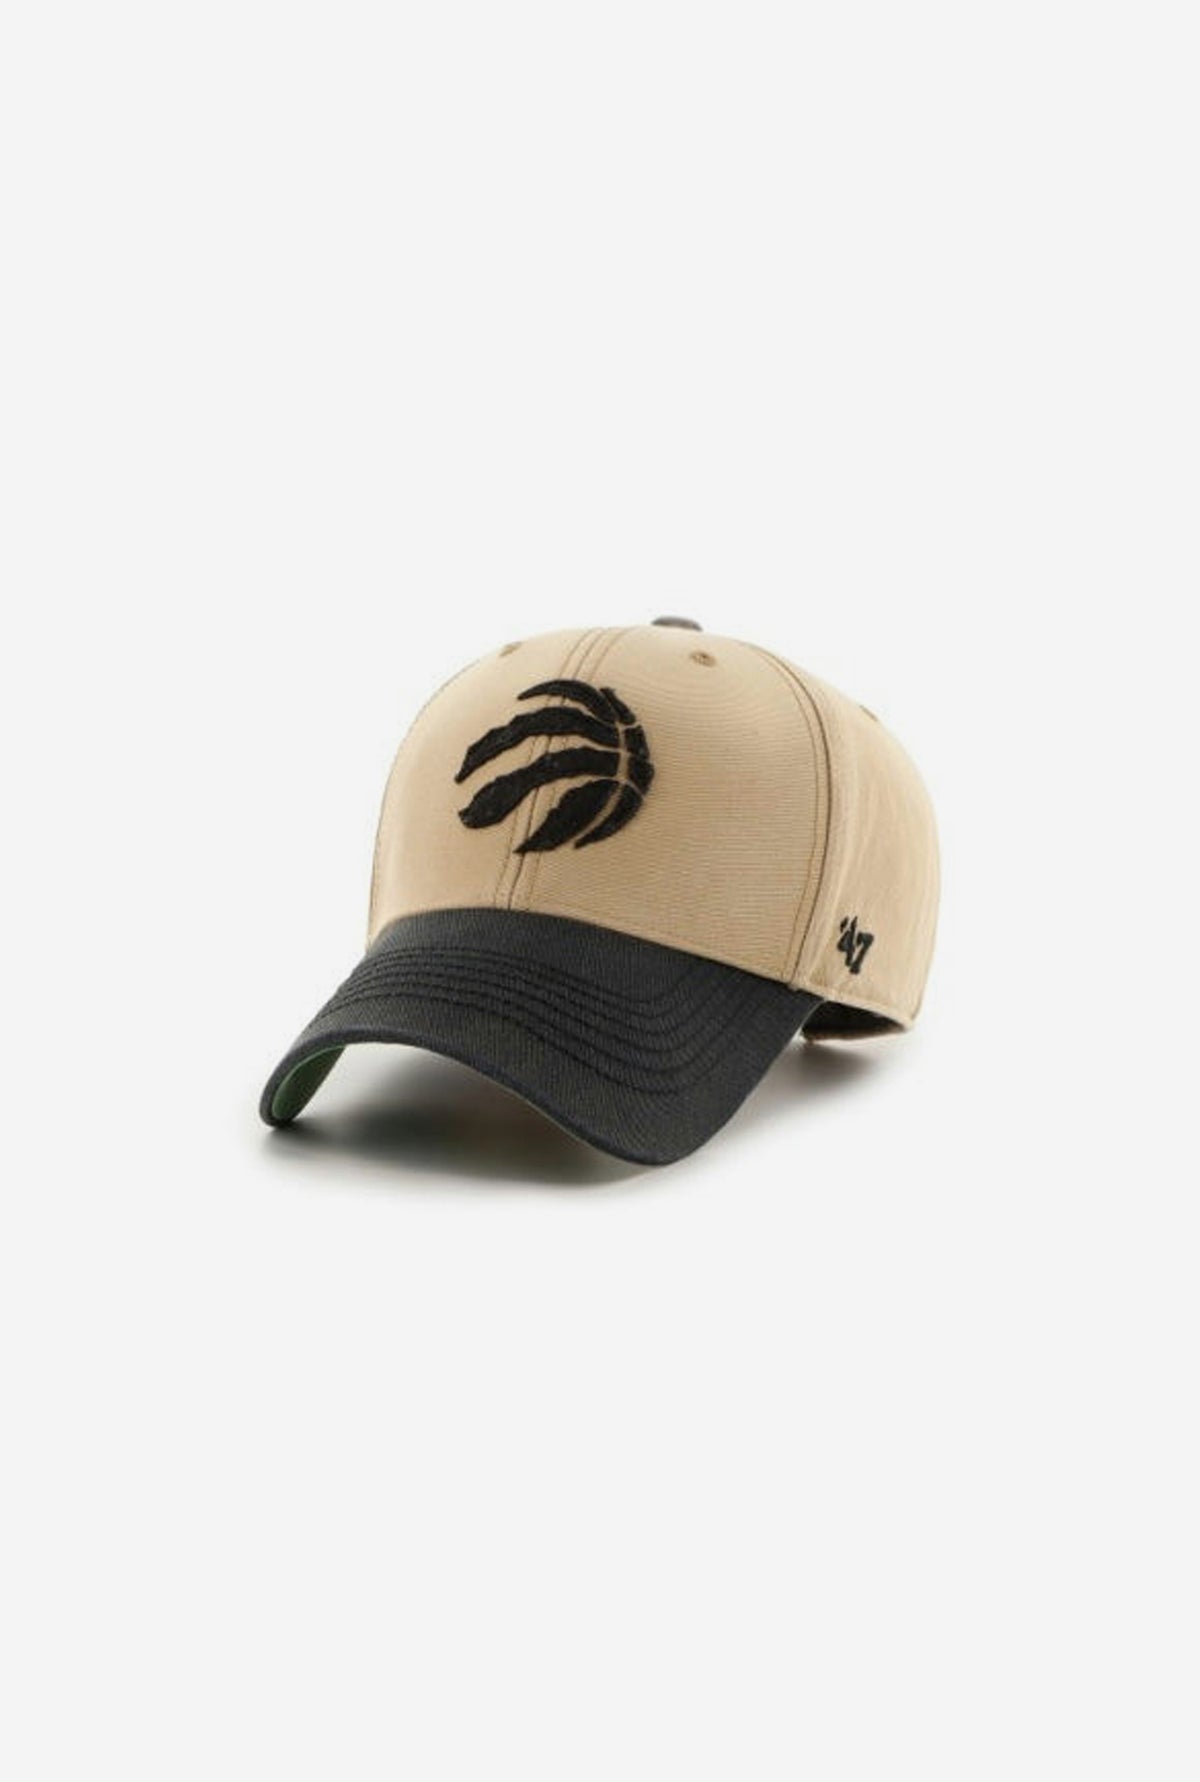 Toronto Raptors Dusted Sedgwick Adjustable Hat